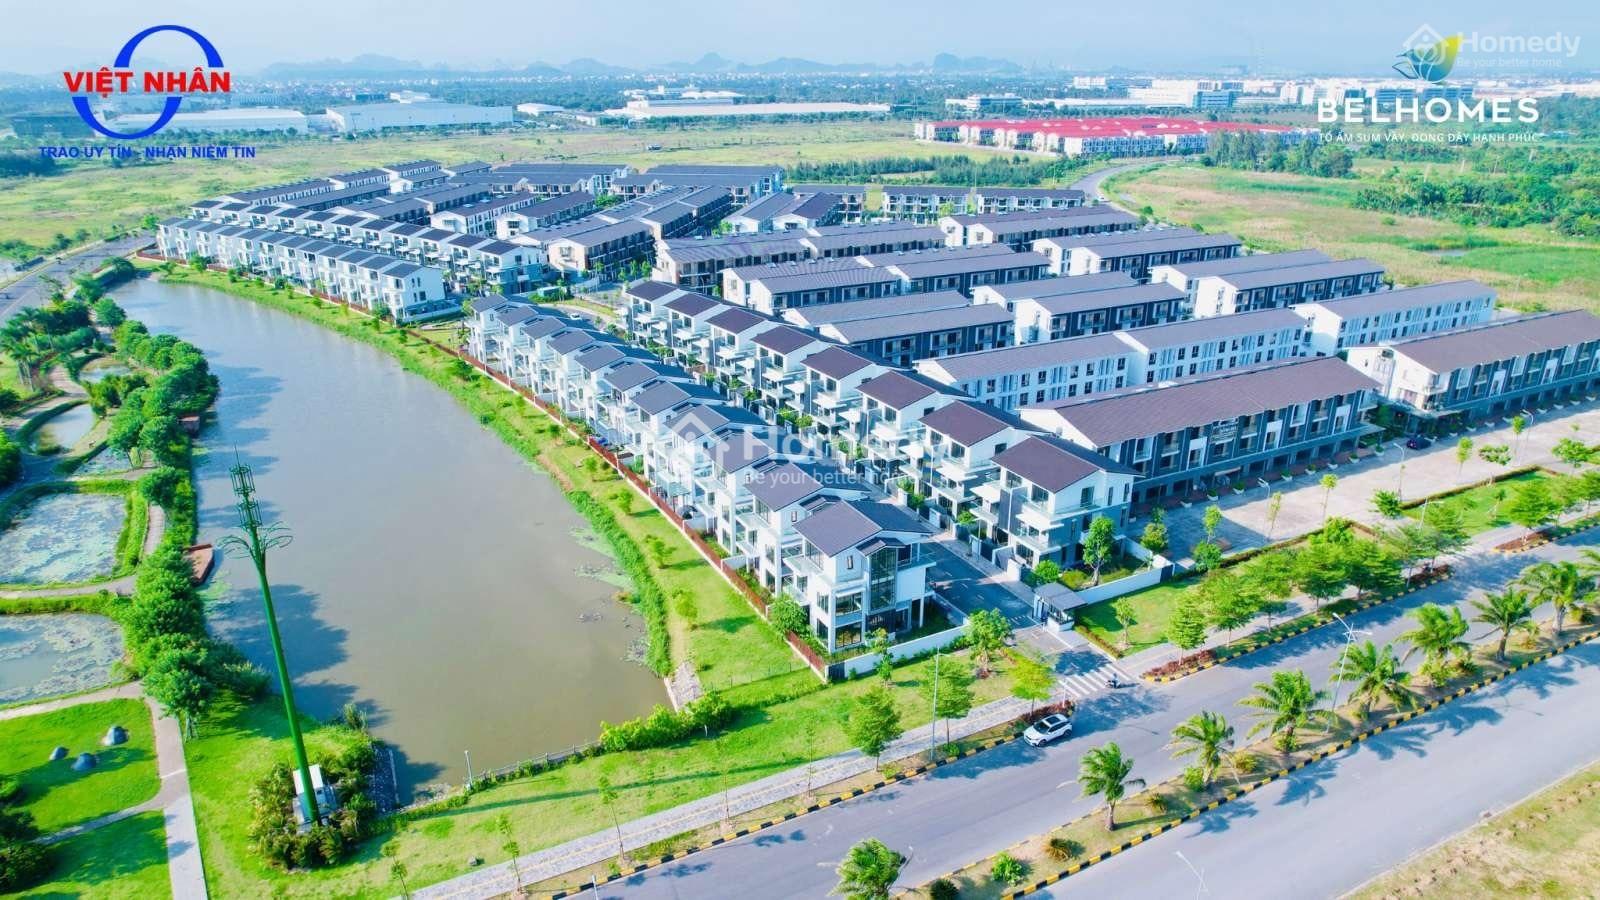 Bán Biệt Thự Villas 130M2 Belhomes Hải Phòng - Ngay Chân Cầu Nguyễn Trãi